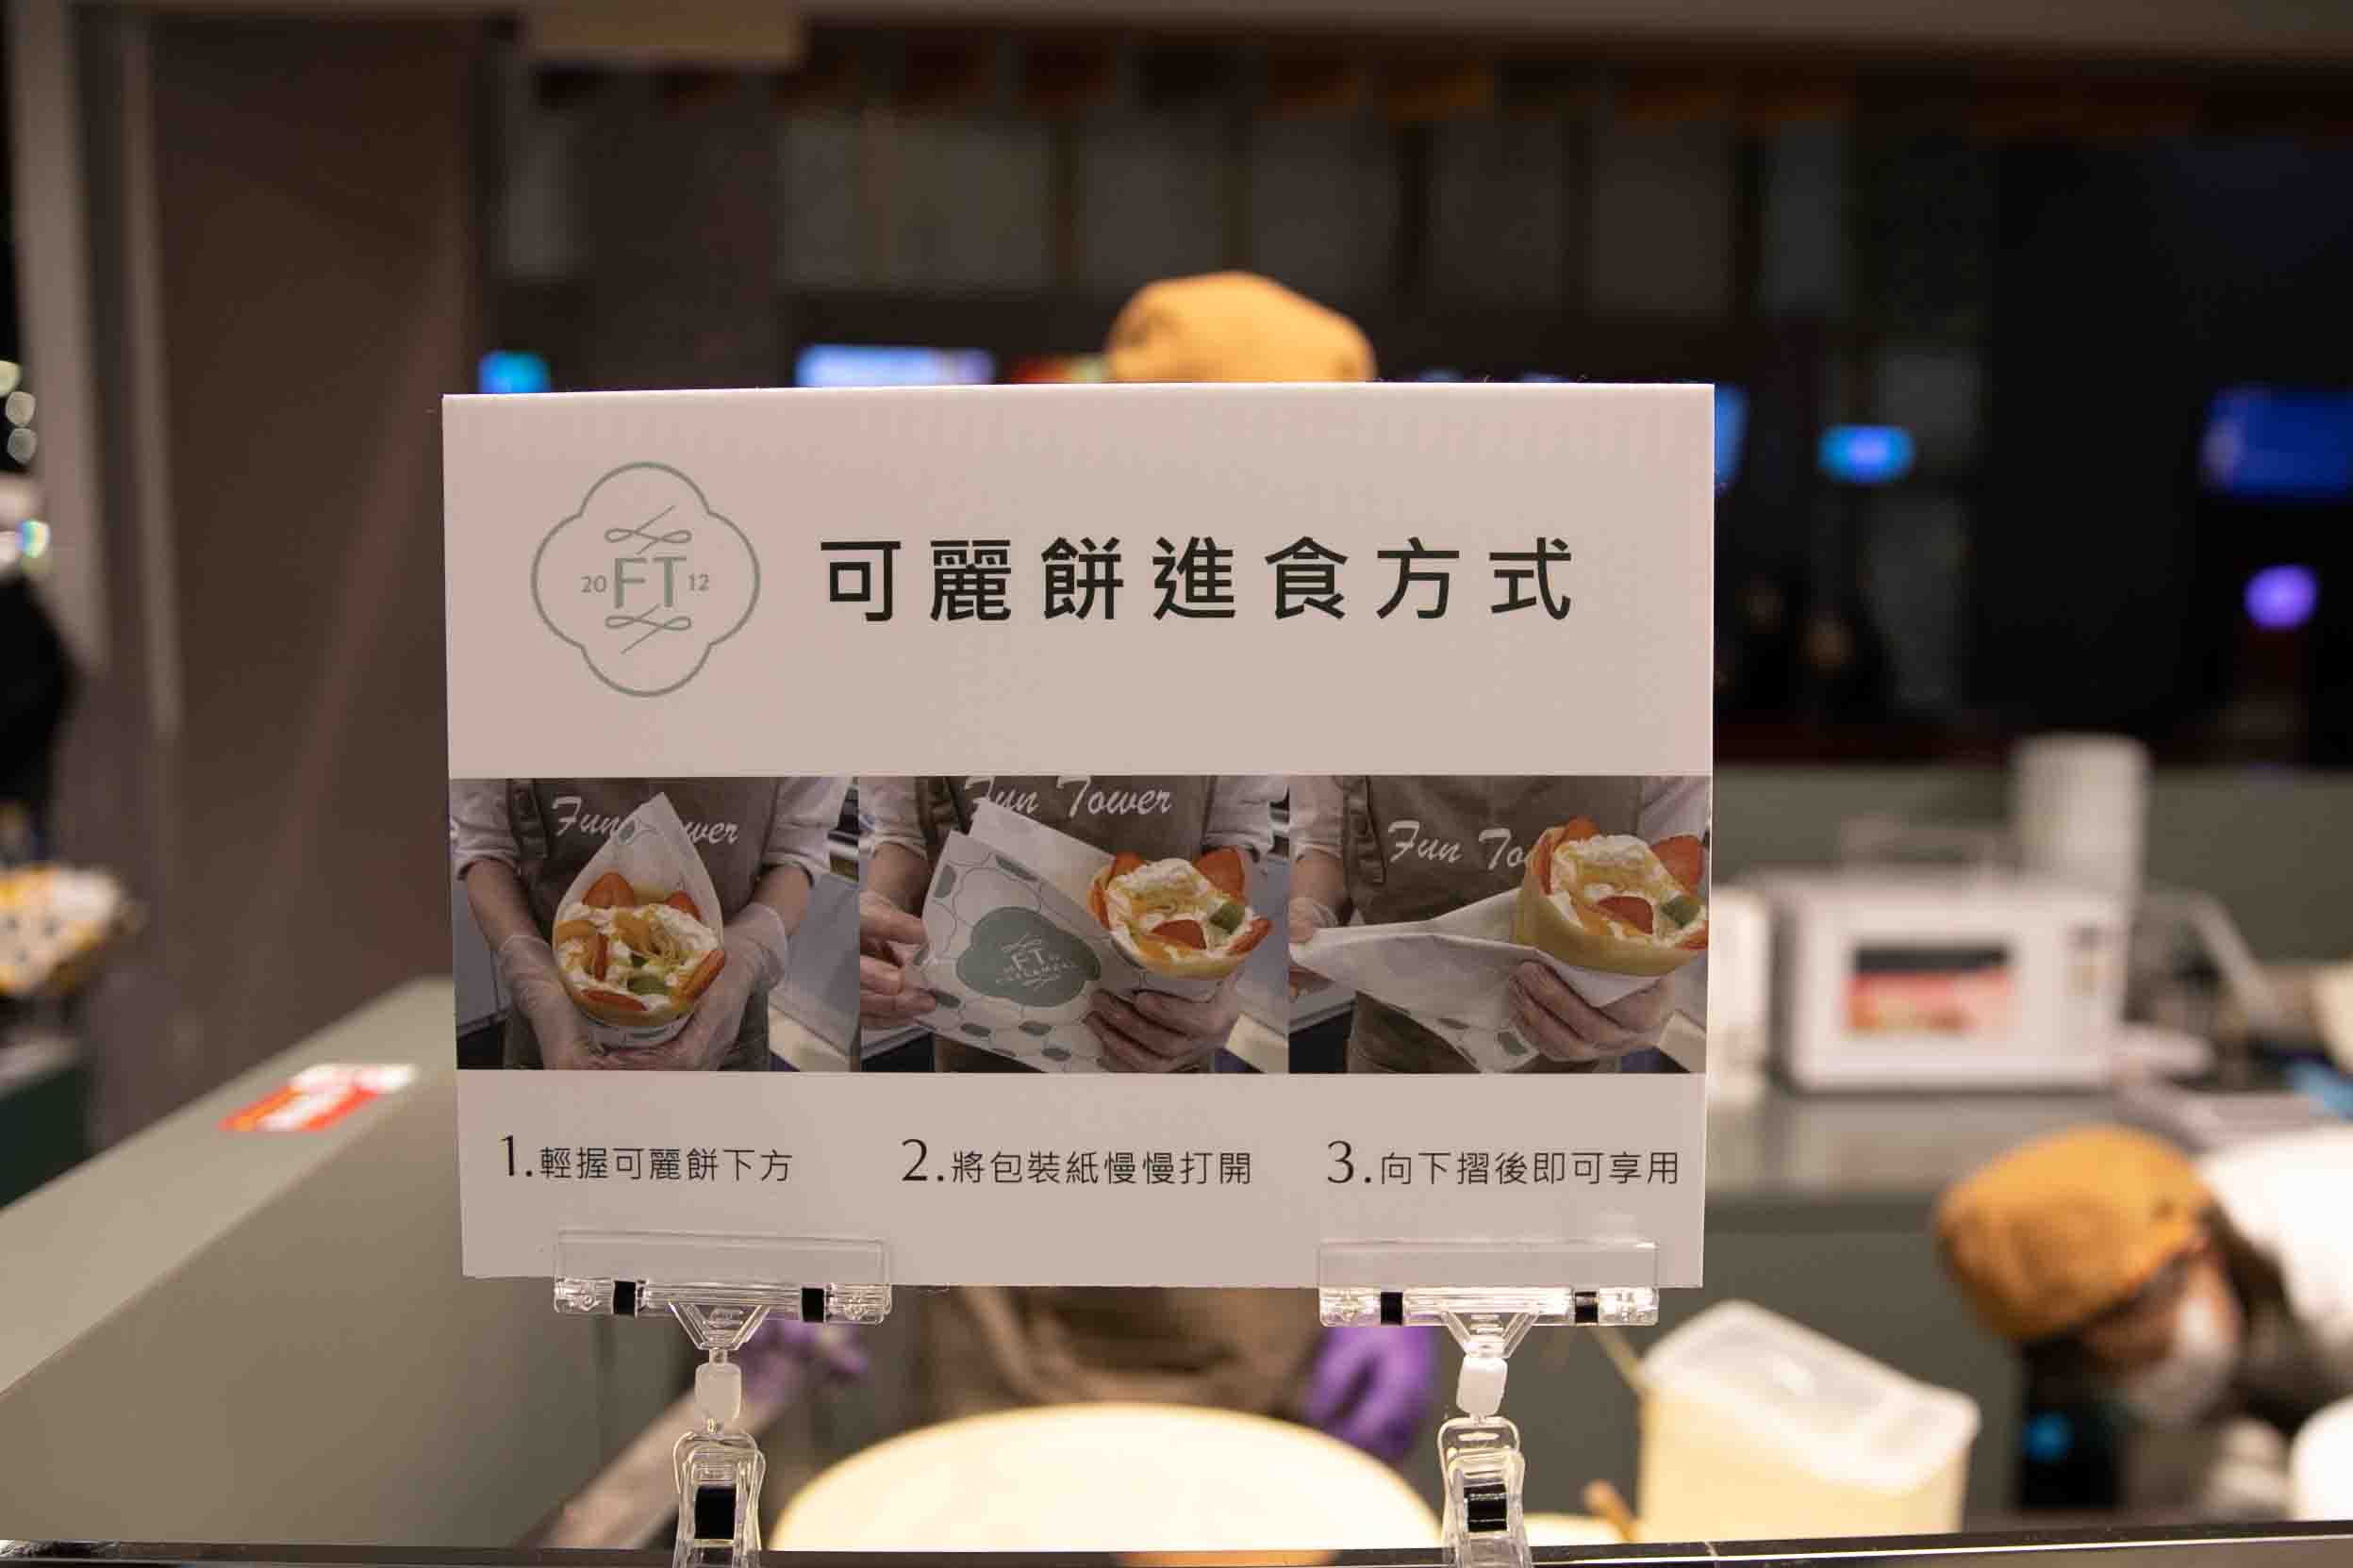 新竹日式可麗餅【巨城 fun tower】不用日本就能吃到軟式可麗餅 附菜單